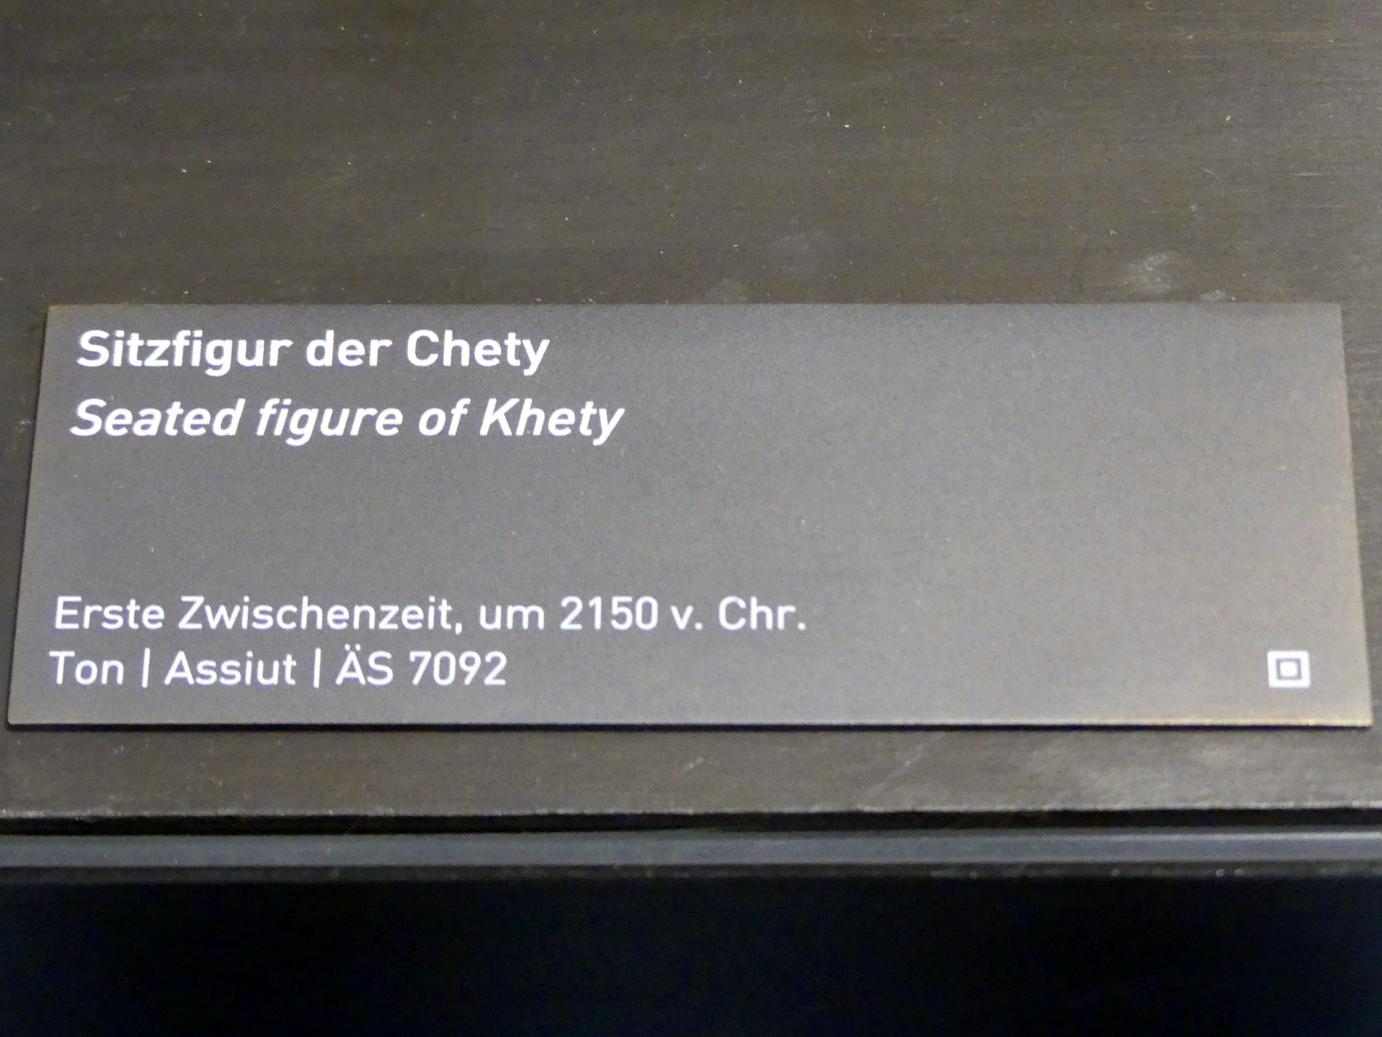 Sitzfigur der Chety, 1. Zwischenzeit, Undatiert, 2150 v. Chr., Bild 2/2